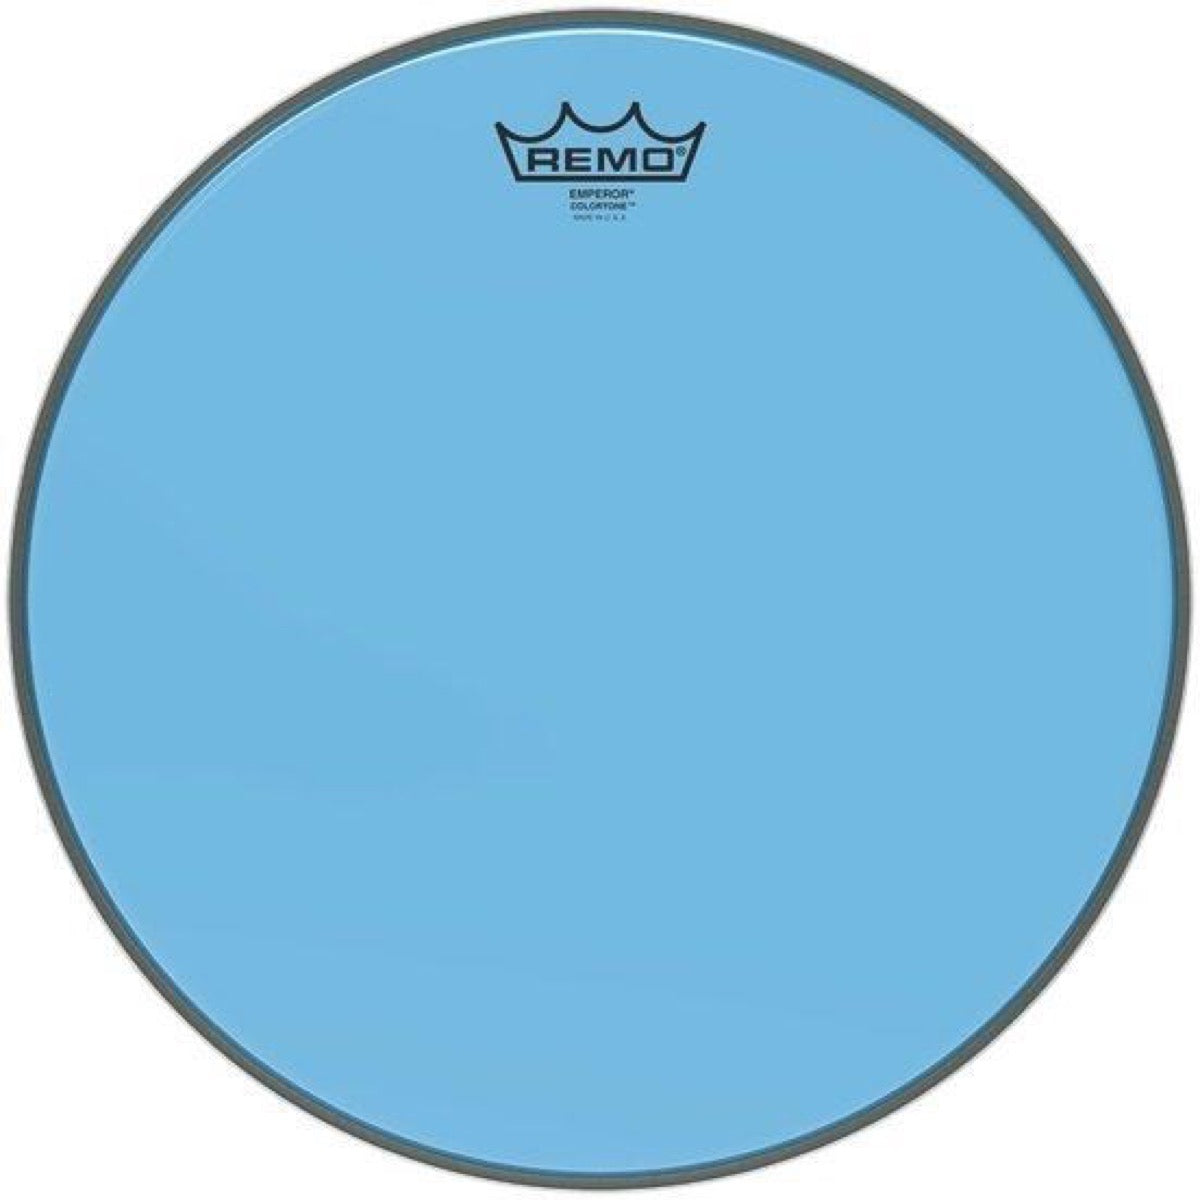 Remo Emperor Colortone Drumhead, Blue, 13 Inch